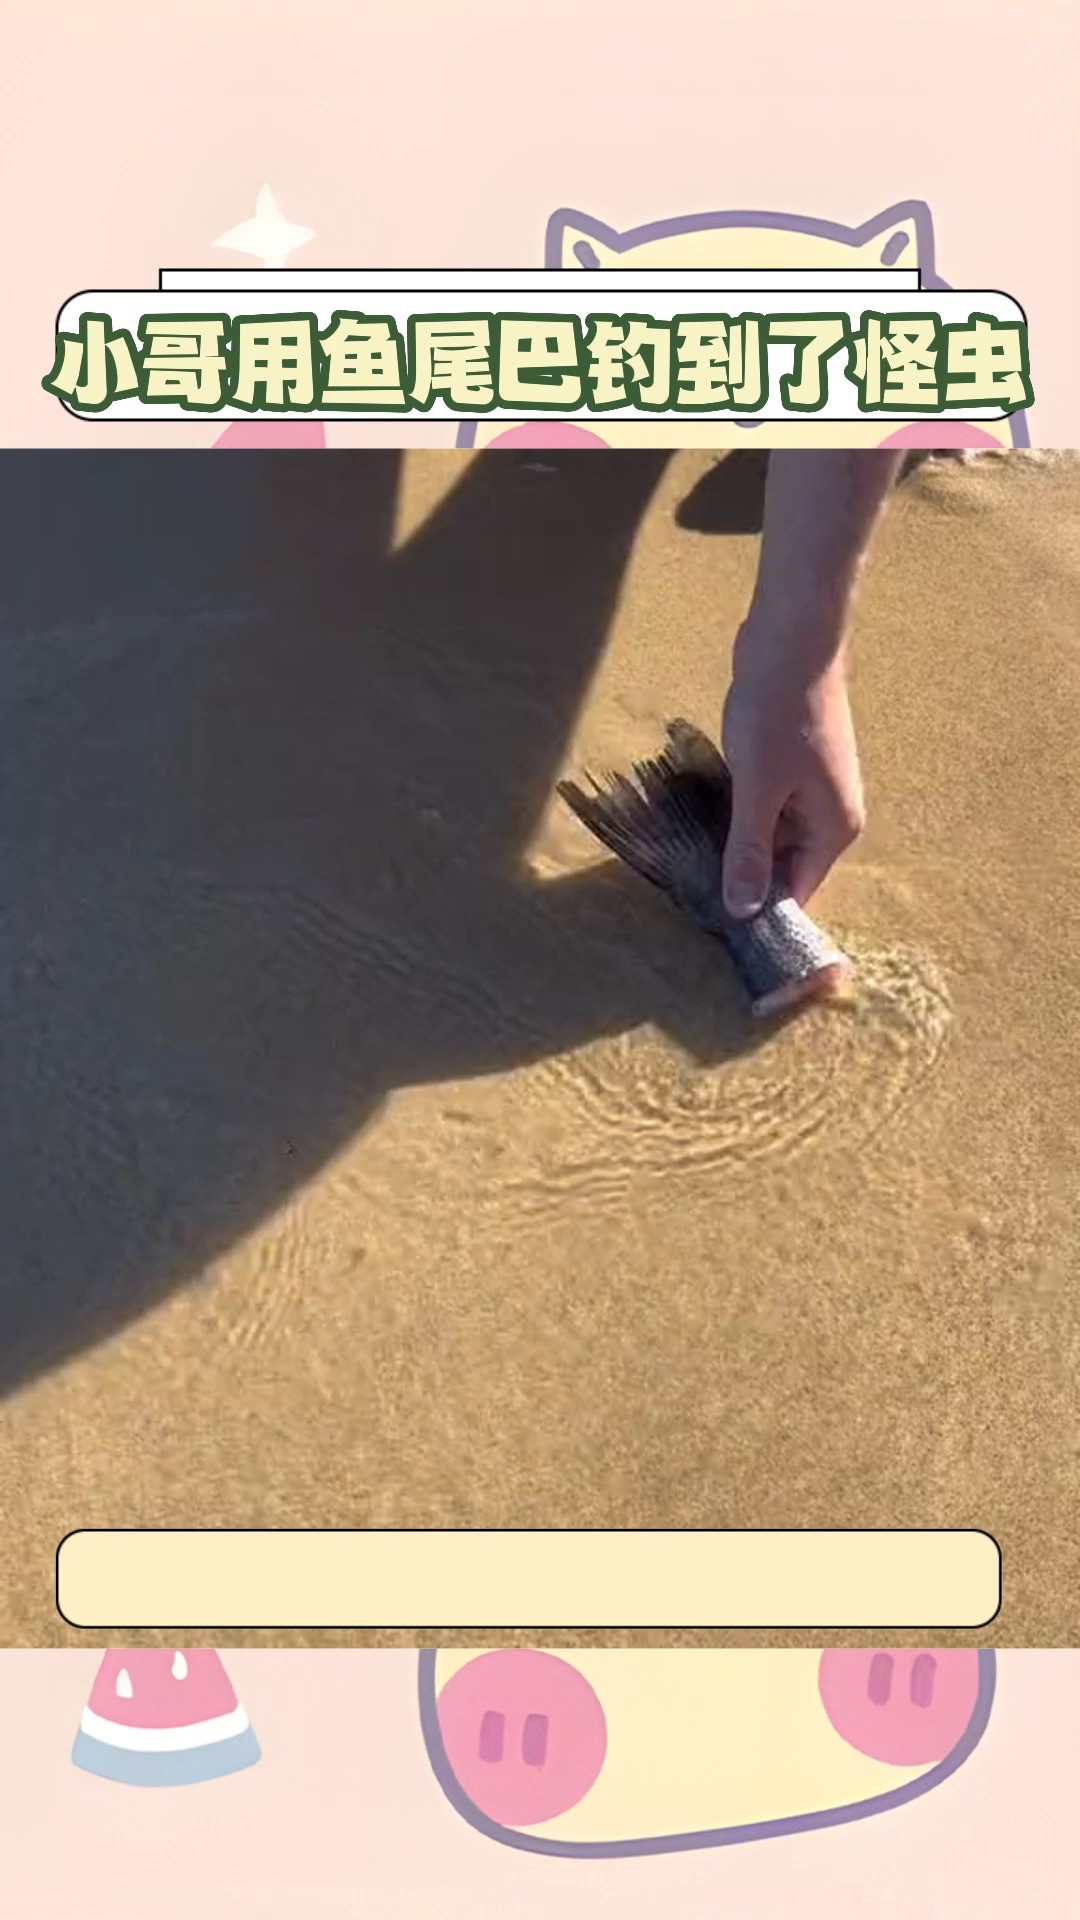 小哥用鱼尾巴居然钓到了一条长虫#沙滩 